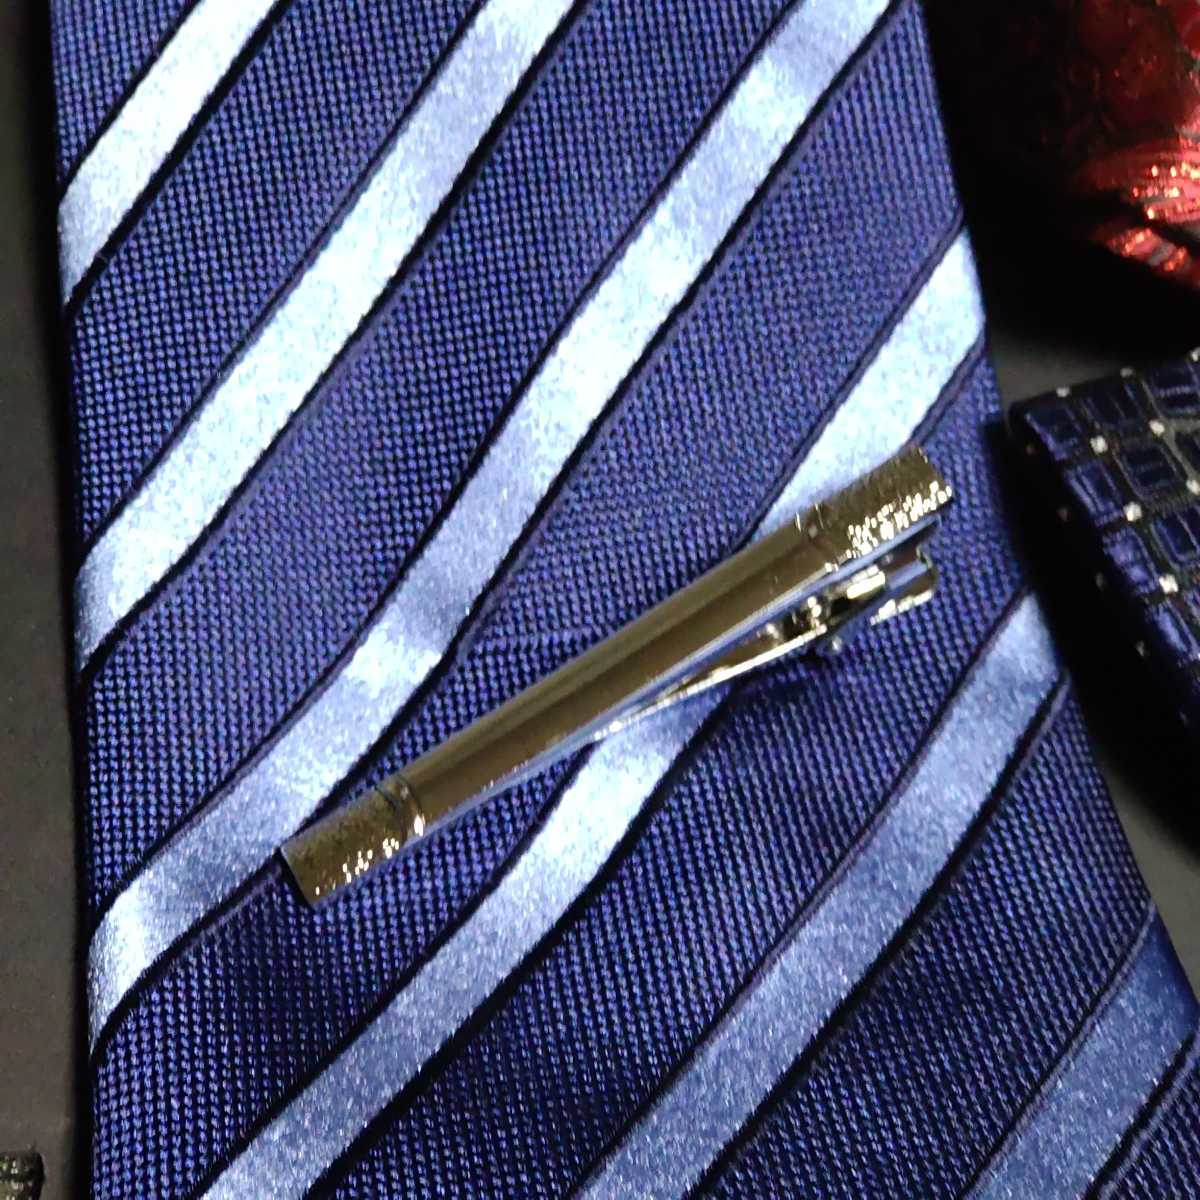  necktie goods 6 point set * necktie * butterfly necktie * pocket square * cuffs * tiepin 2 kind attaching / formal wear 